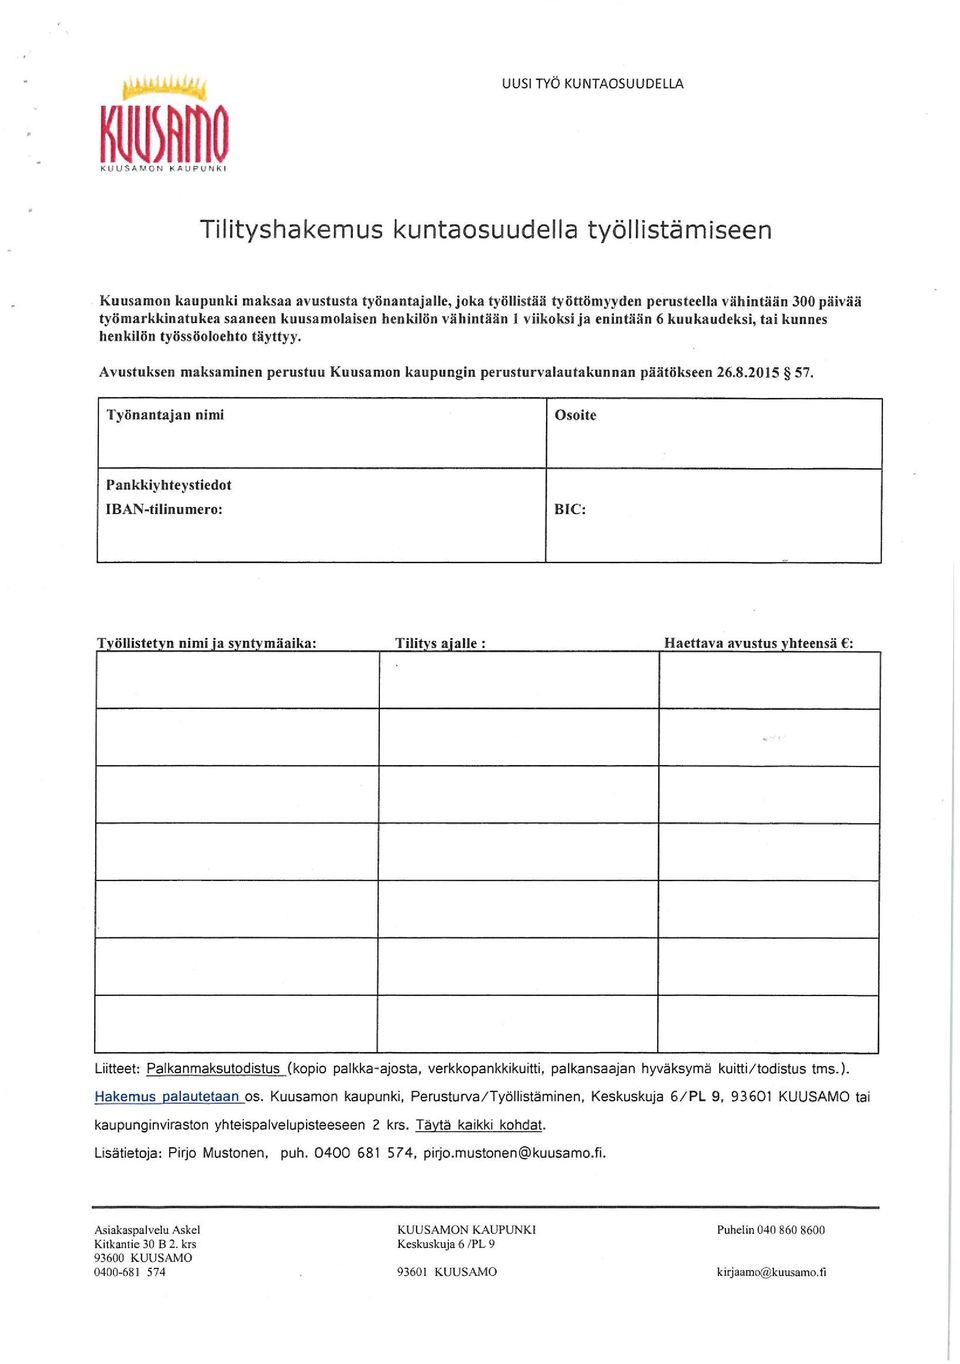 Avustuksen maksaminen perustuu Kuusamon kaupungin perusturvalautakunnan päätökseen 26.8.2015 57.